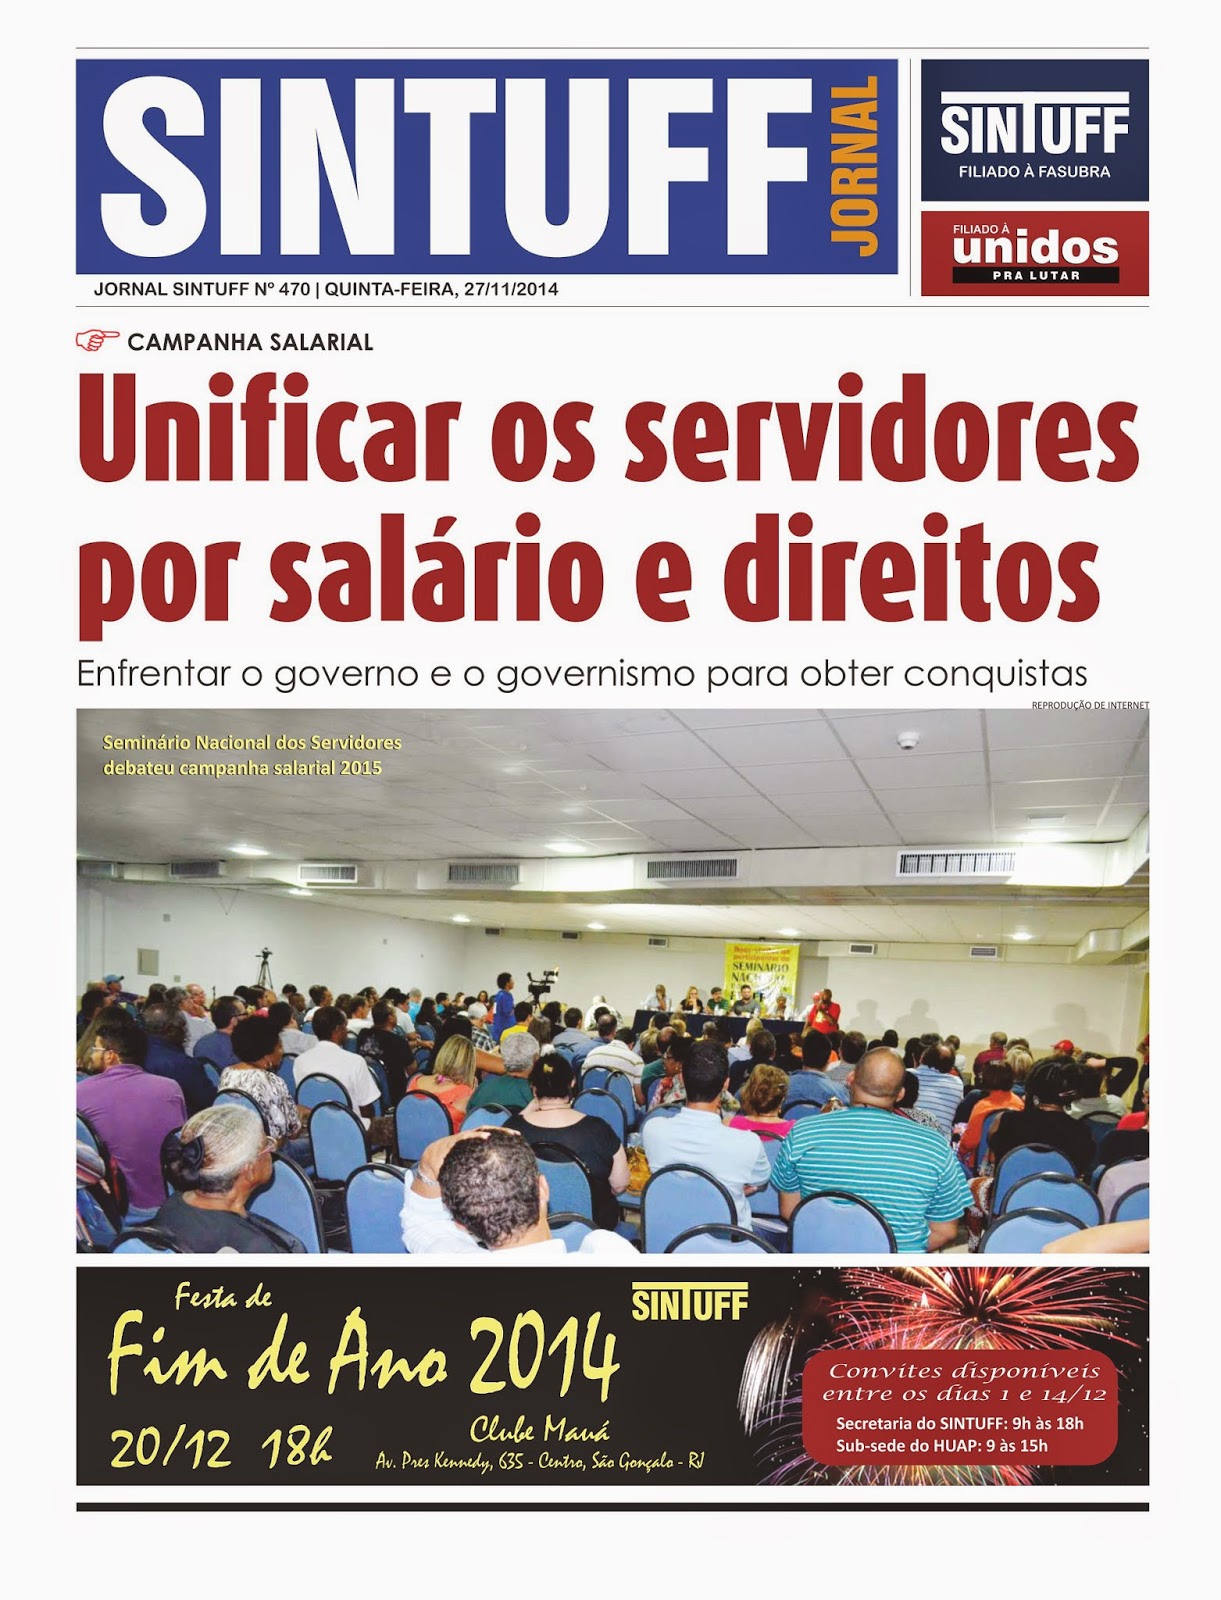 Festa de Final de Ano do SINTUFF será novamente no Clube Português